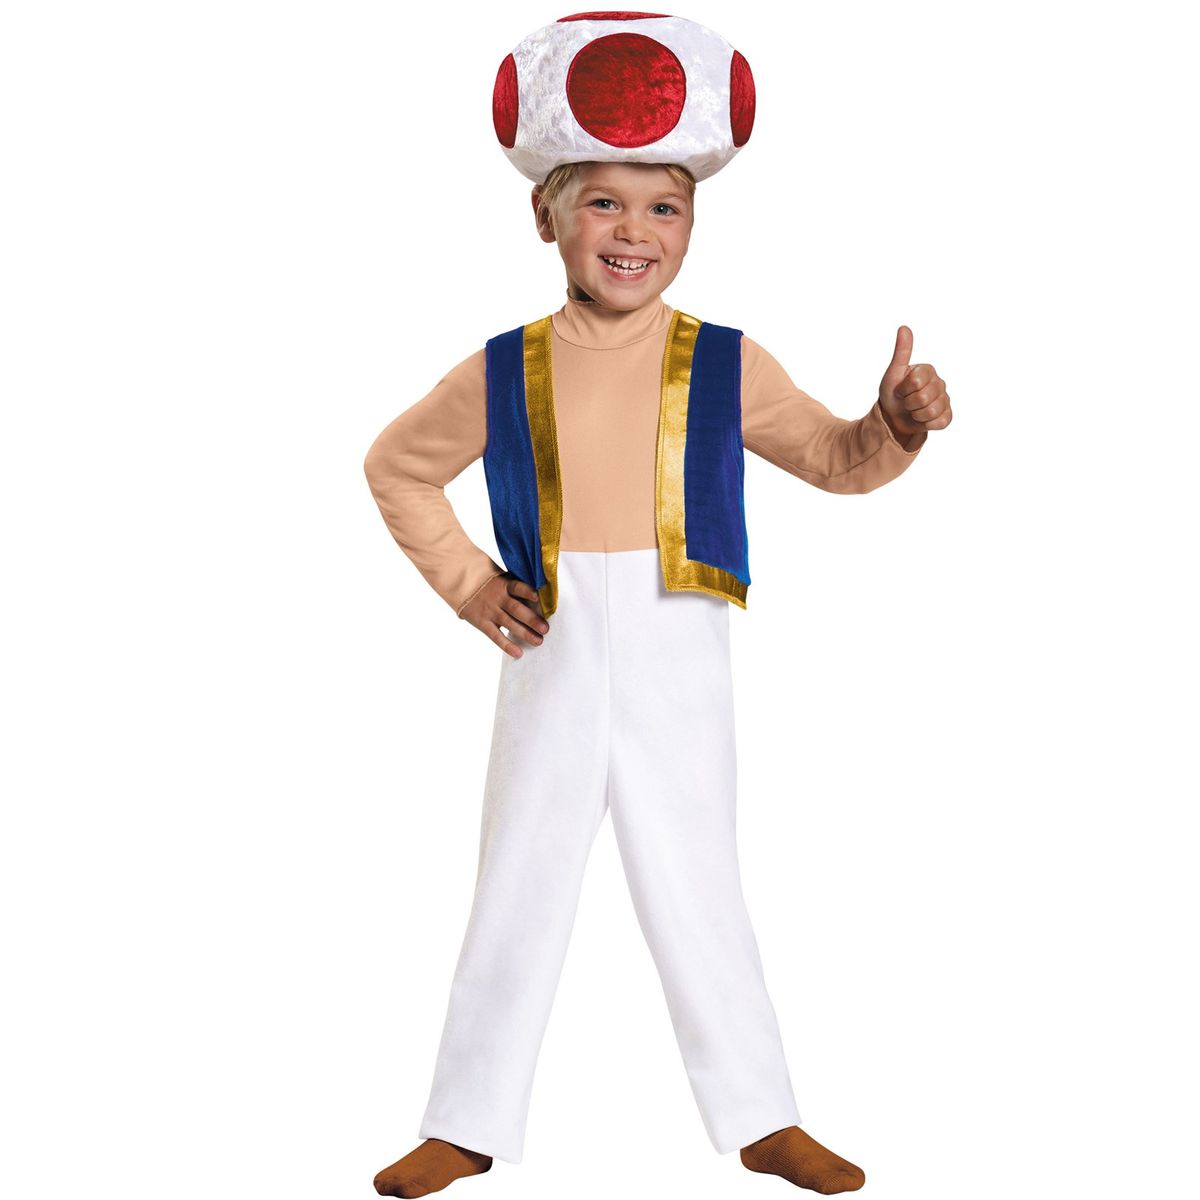 6523円 熱い販売 送料無料 スーパーマリオブラザーズ トードラー Halloween ハロウィン コスチューム コスプレ 衣装 仮装 子供 子ども キッズ 男の子 男児 海外通販 Toad Toddler Costume Super Mario Brothers